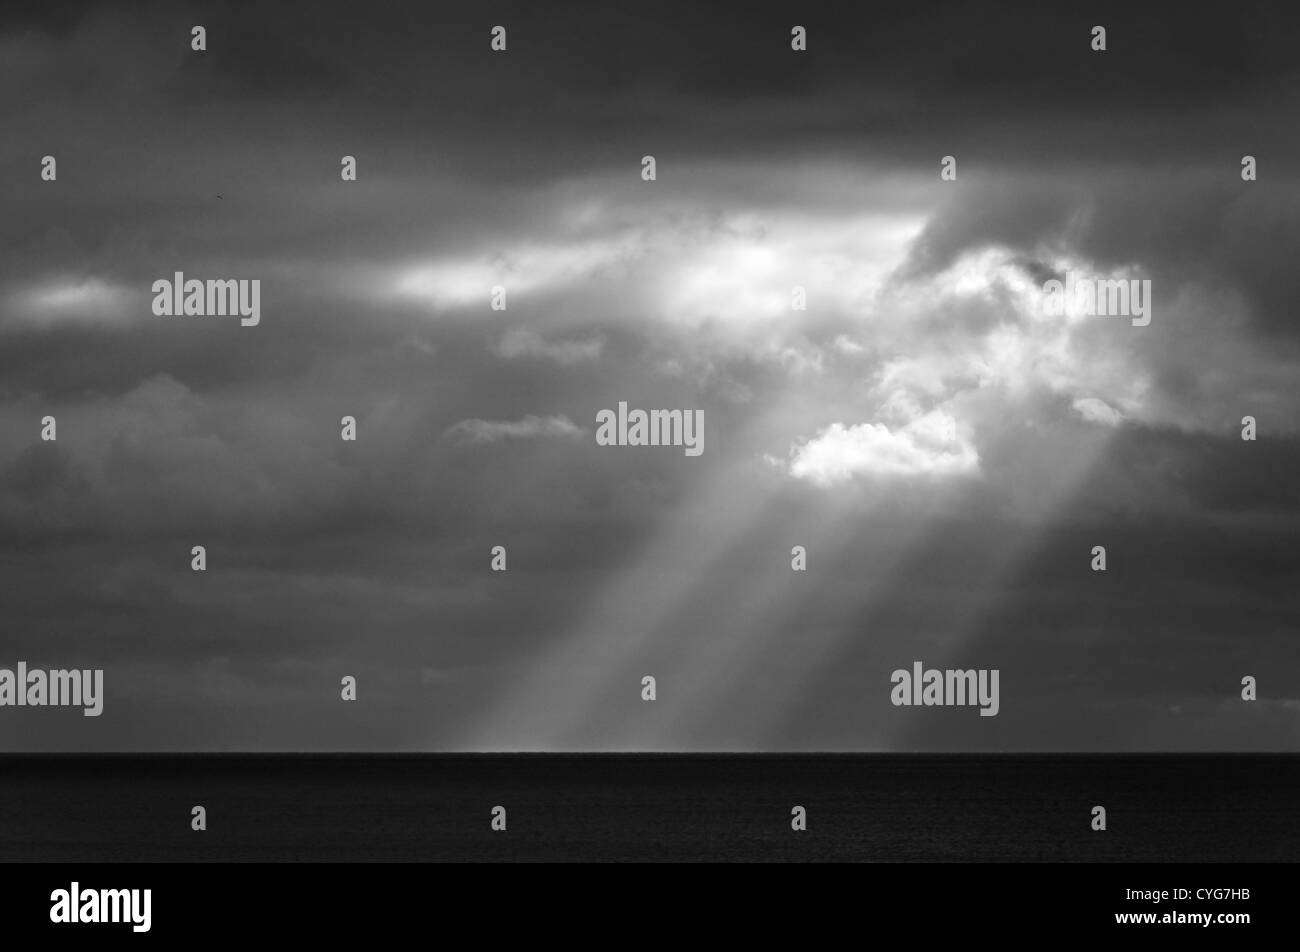 Sonnenstrahl am Meer, stürmisches Wetter, schwarz / weiß Fotografie Stockfoto